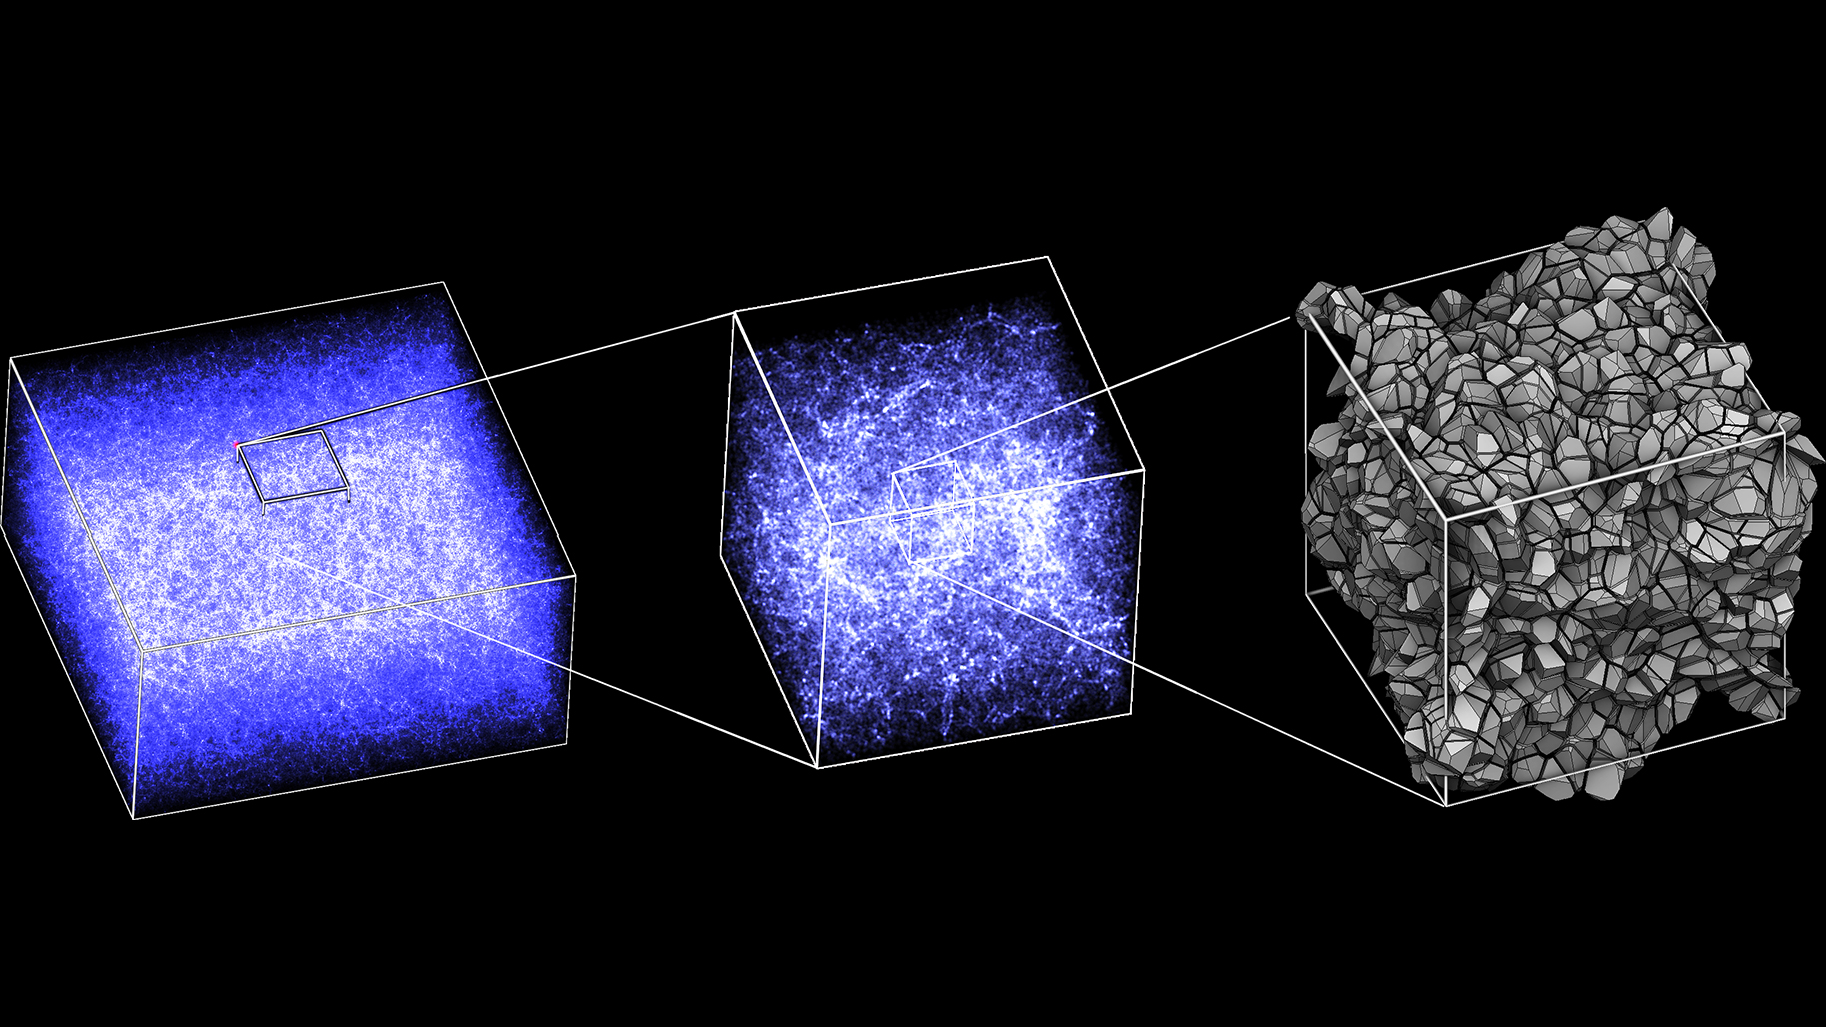 De gauche à droite: zooms succesifs sur une simulation numérique et reconstruction de la condition initiale représentée par un diagramme dit "de Laguerre"  (figure la plus à droite)